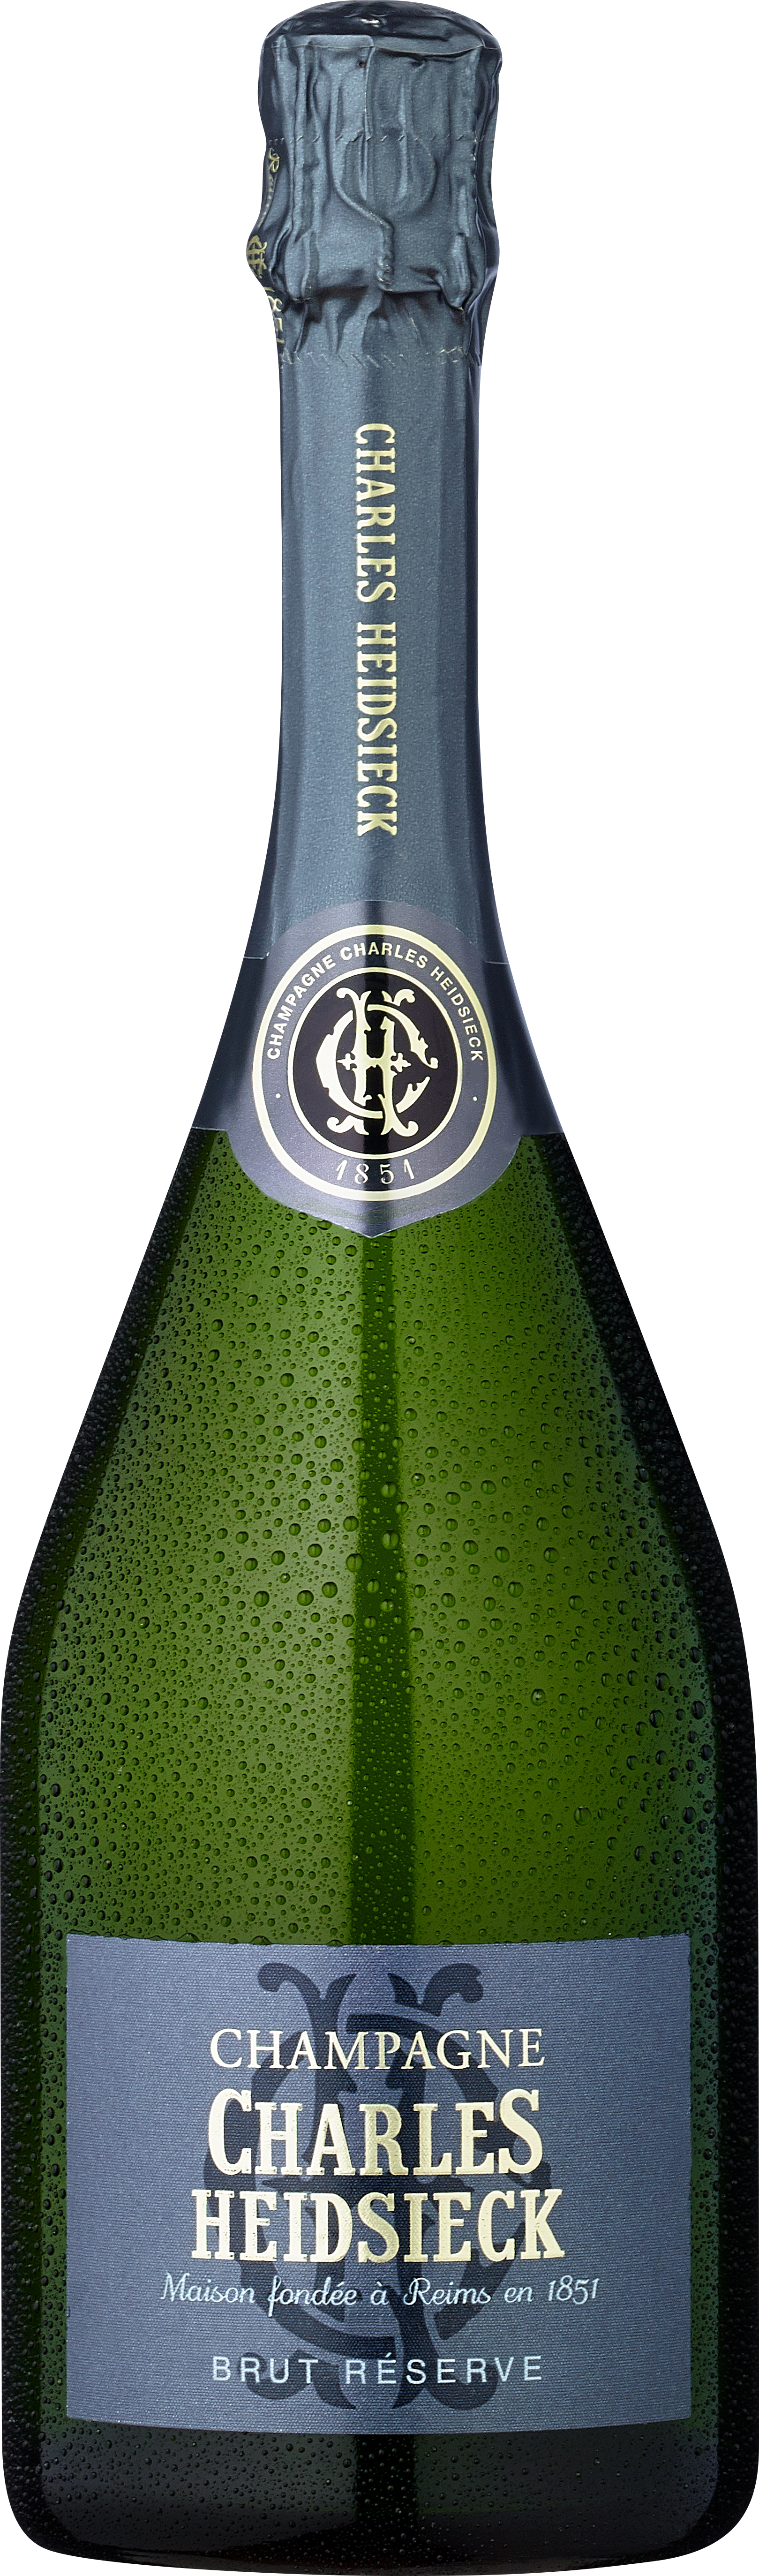 Köstlichalkoholisches - Champagner Charles Heidsieck Brut Réserve - Onlineshop Ludwig von Kapff